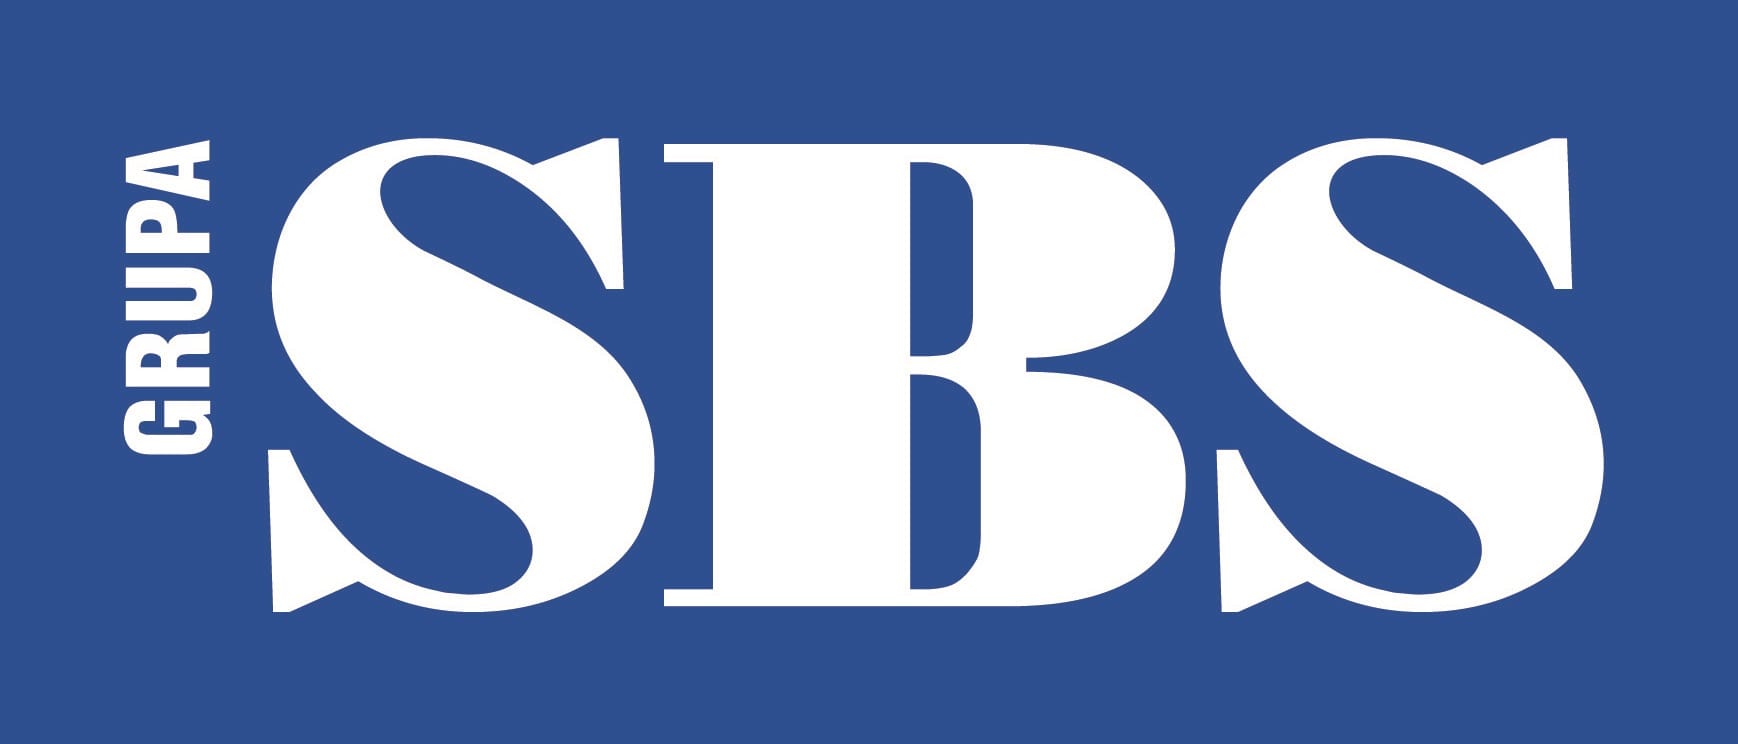 sbs_logotyp2_2.jpg